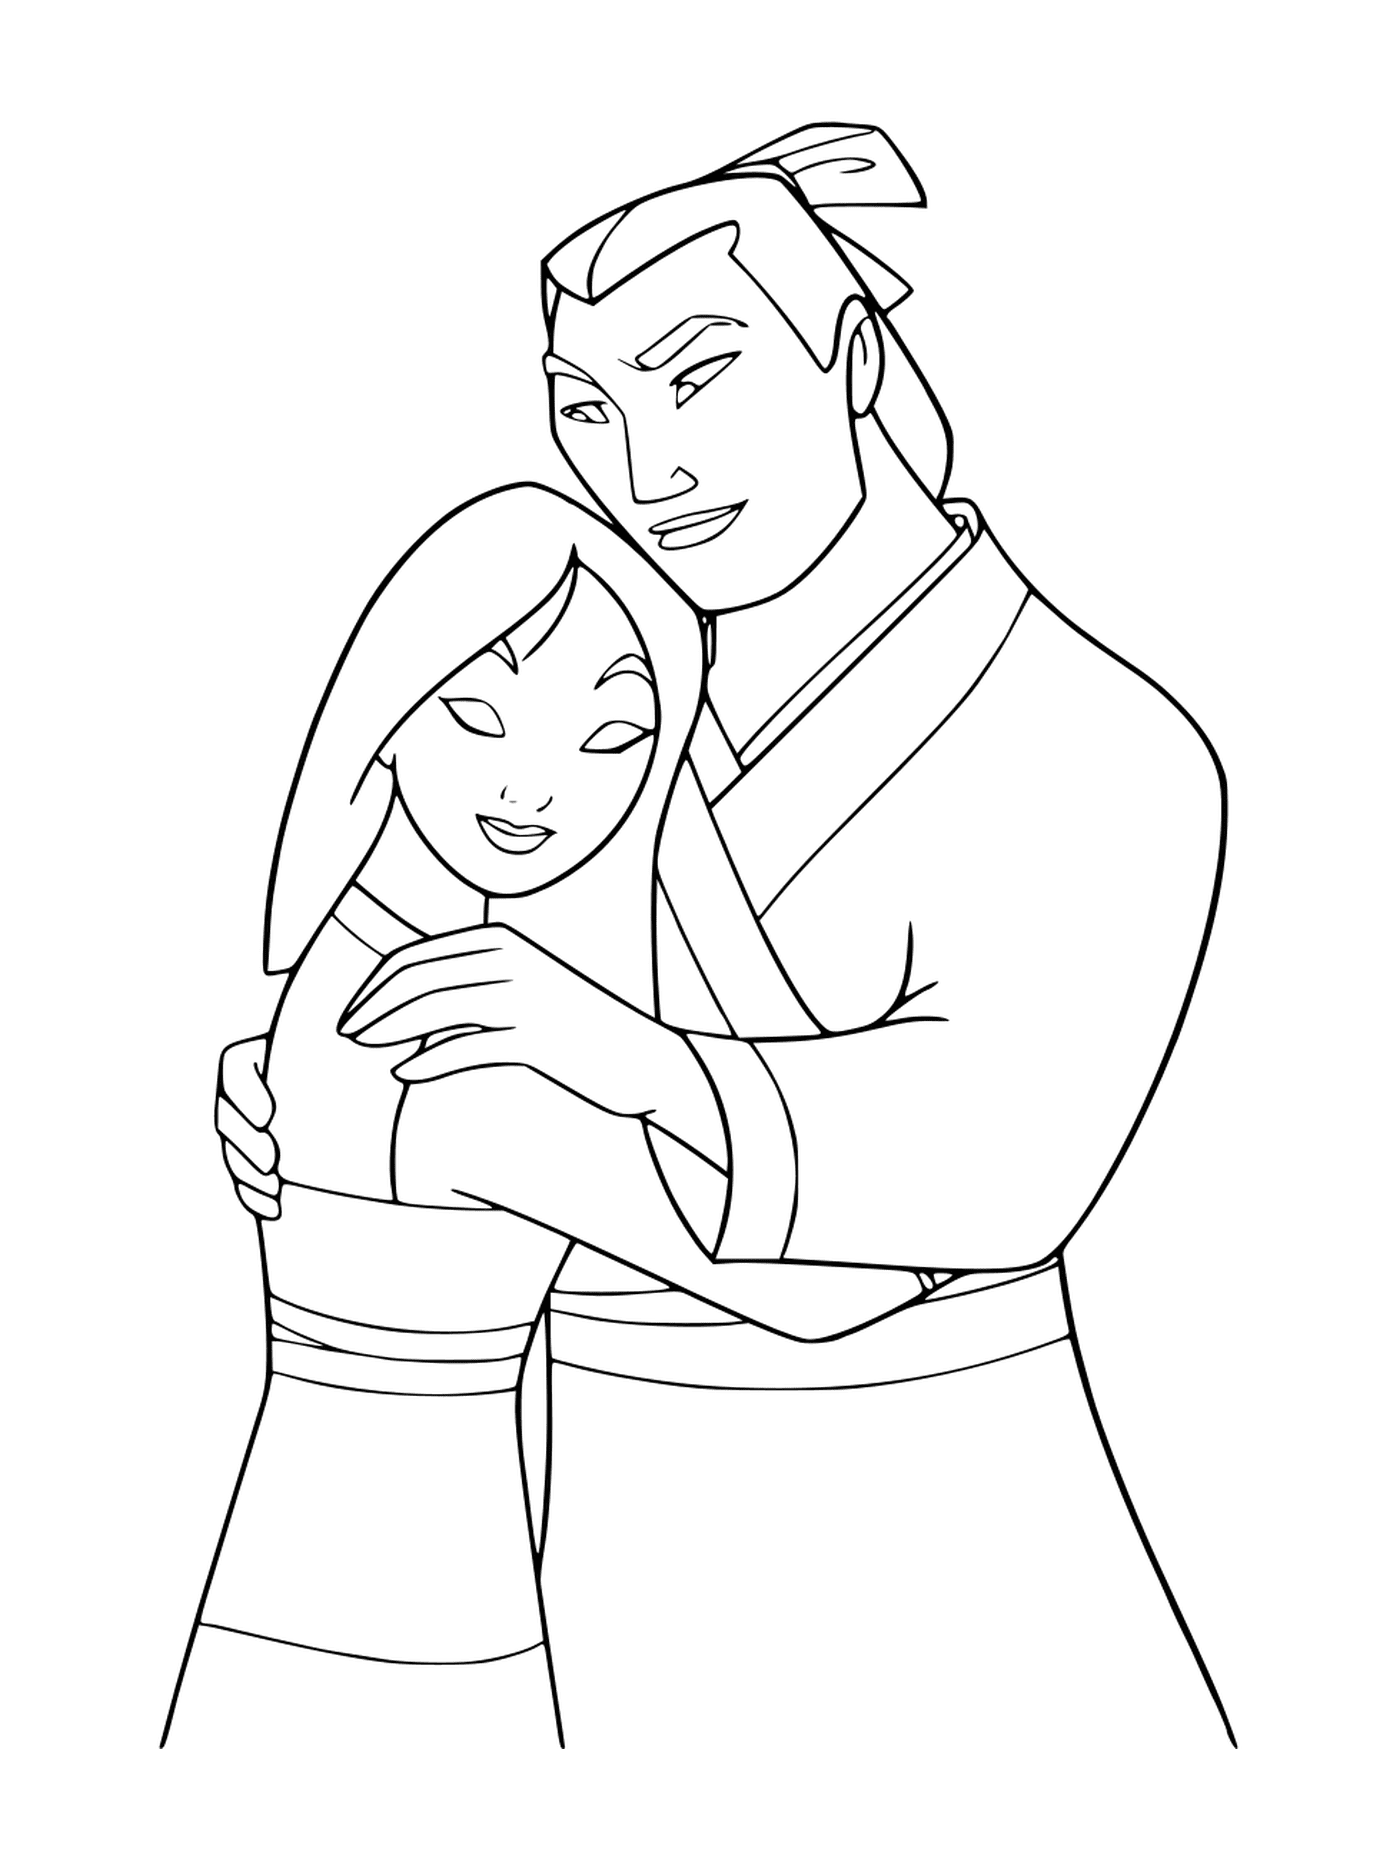  Li Shang confortos Mulan 